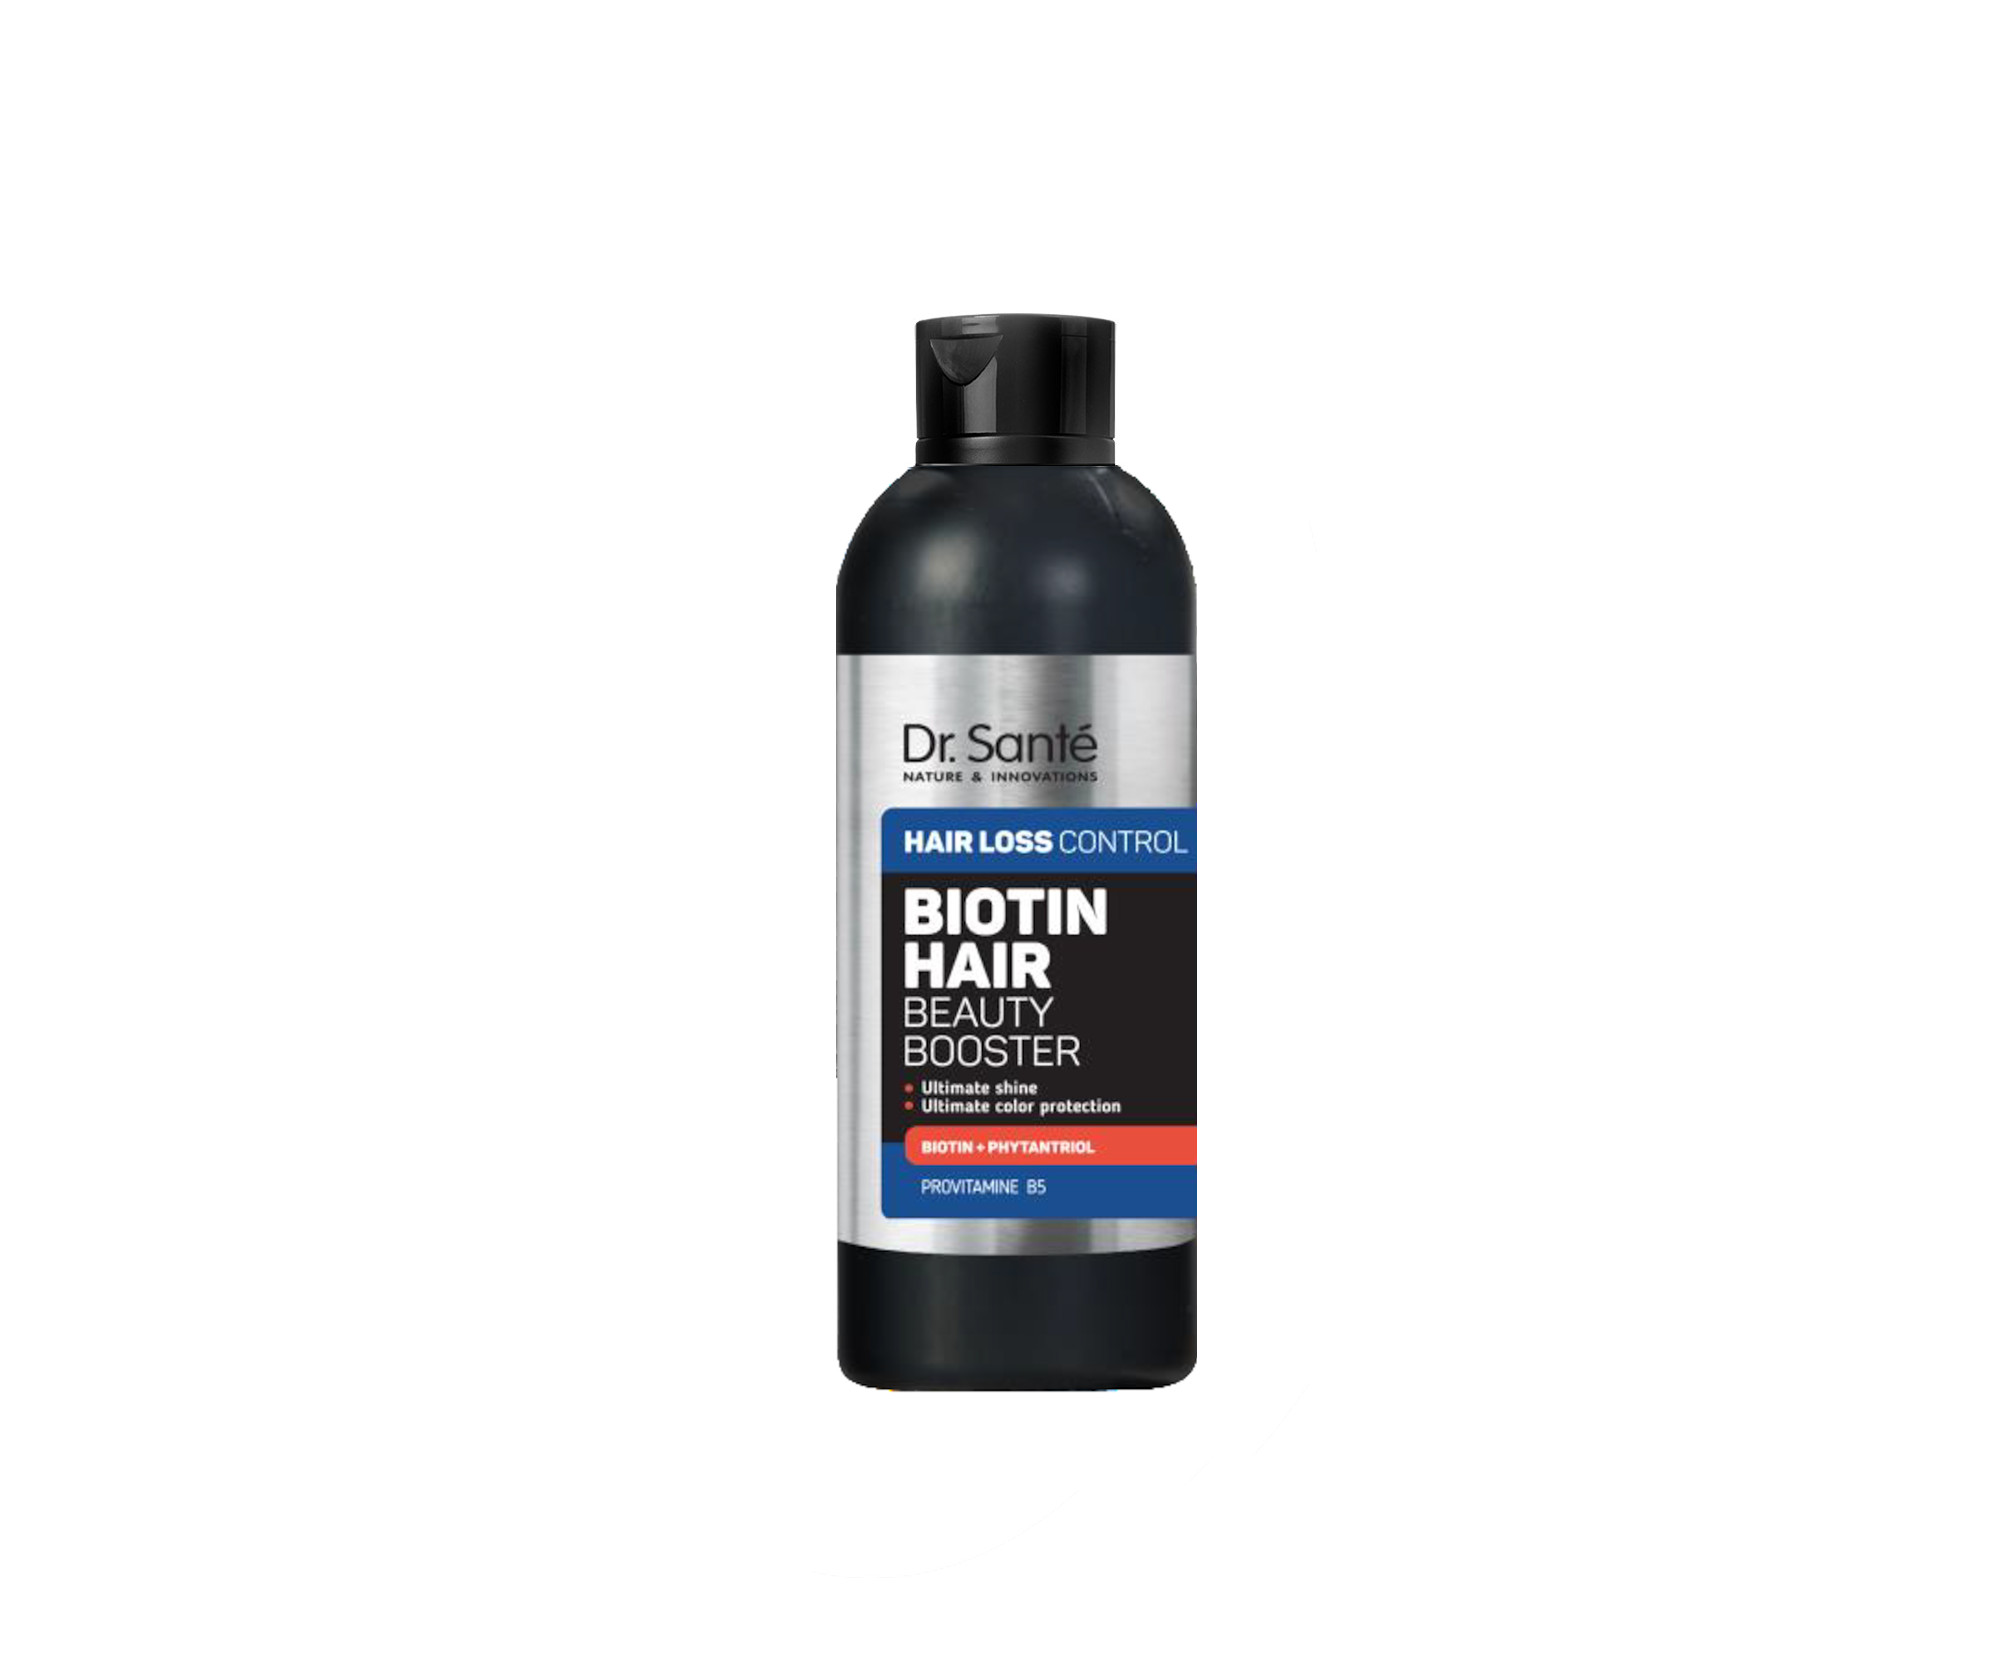 Booster pro zpevnění a posílení vlasů Dr. Santé Hair Loss Control Biotin Hair Booster - 100 ml + dárek zdarma